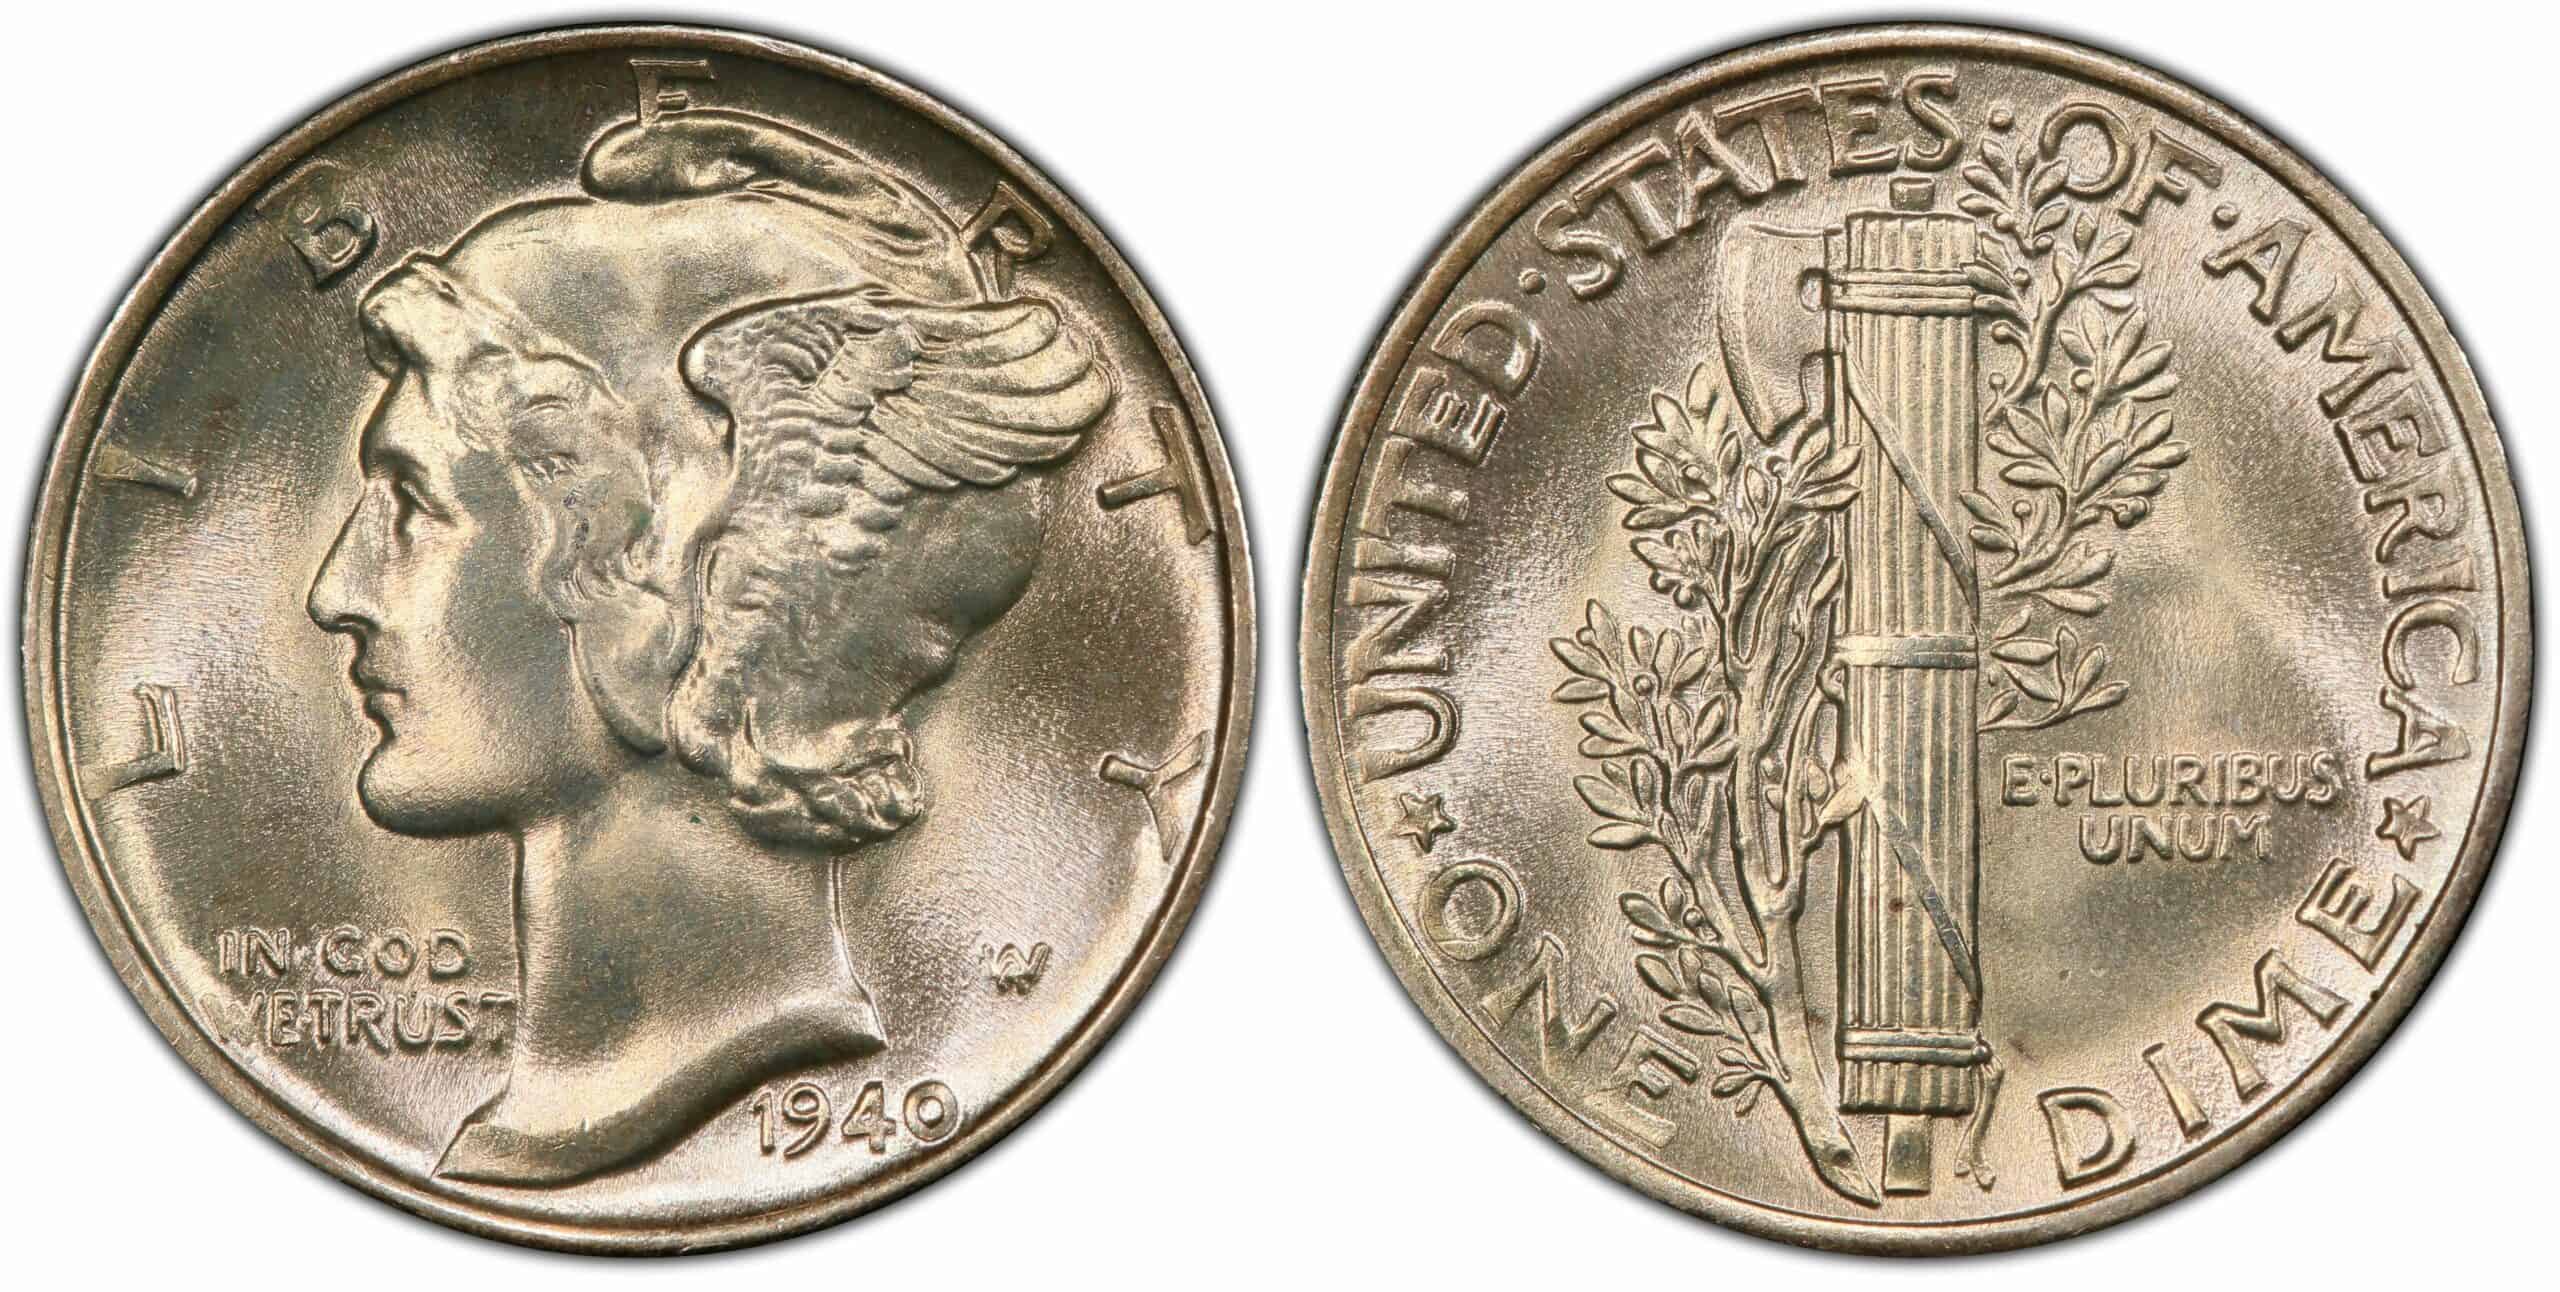 1940 No Mint Mark Dime (P) Value